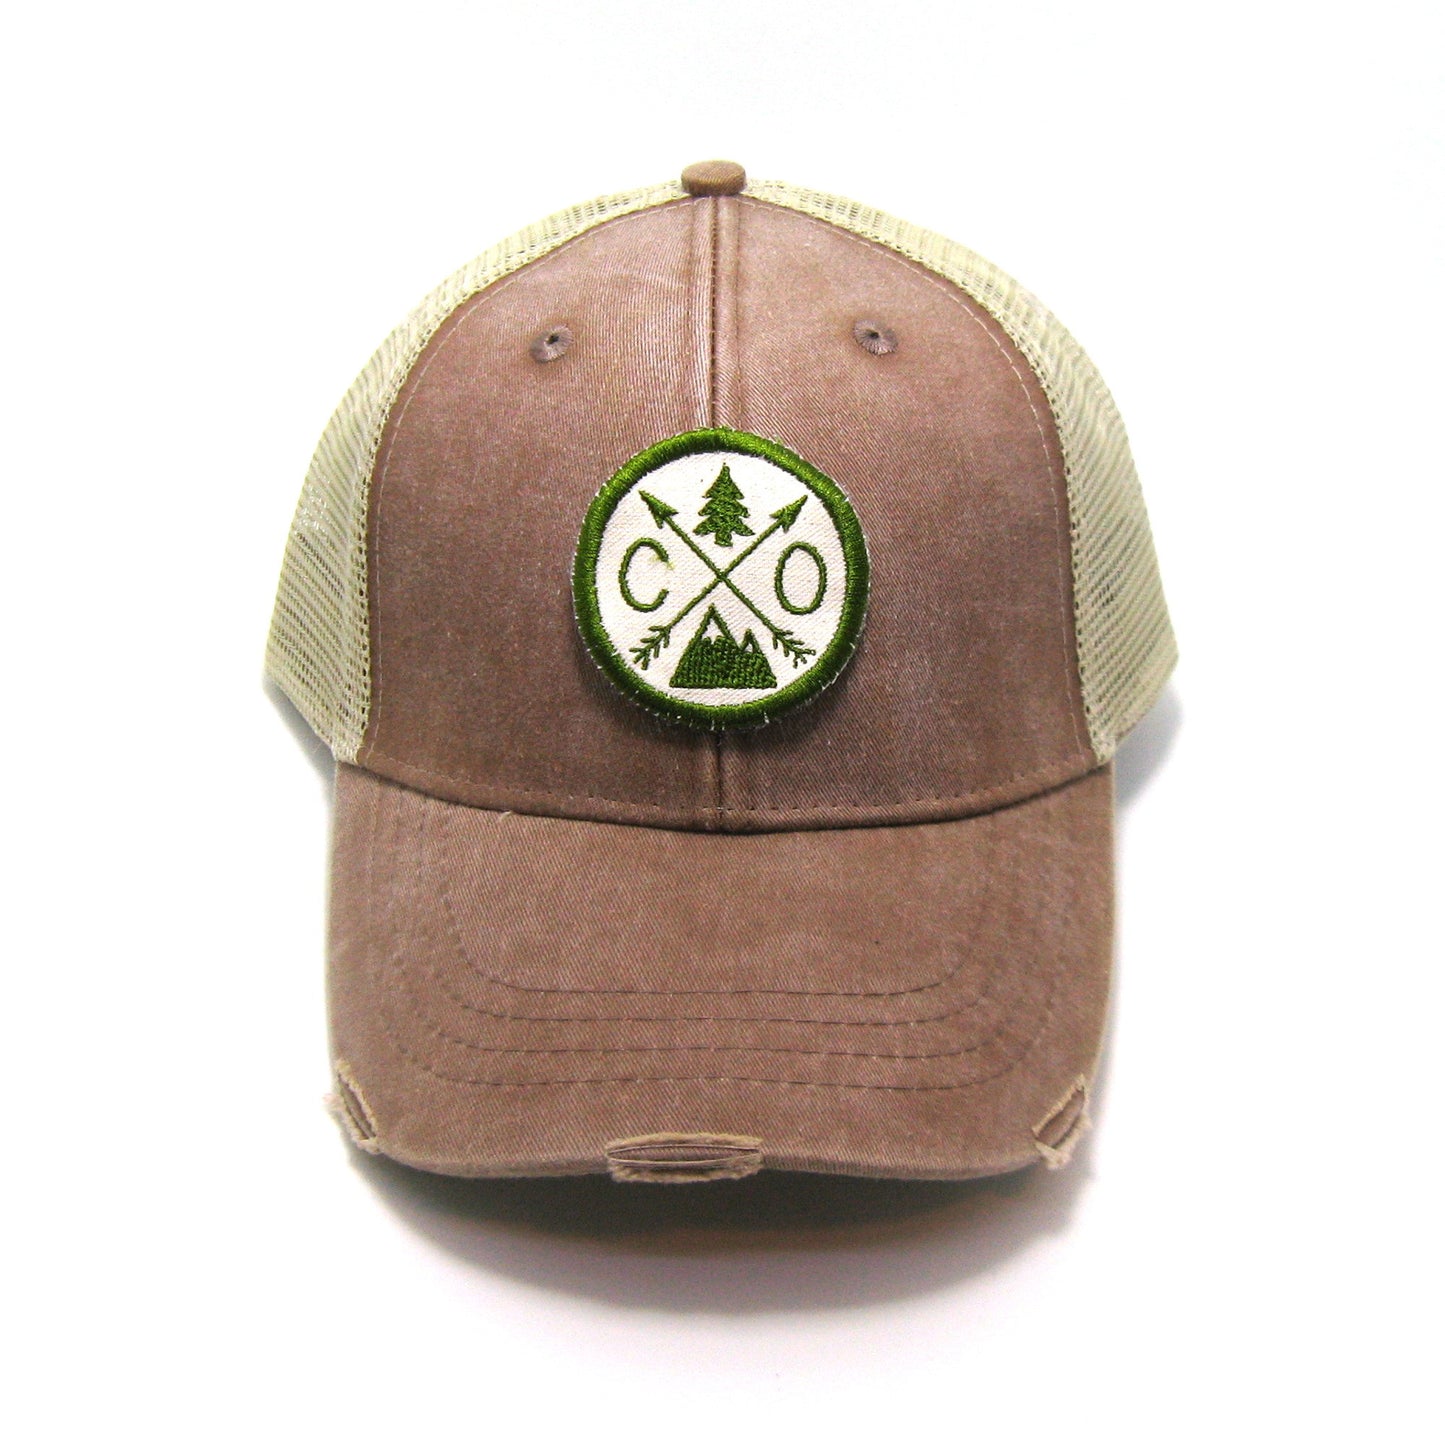 Colorado Hat - Distressed Snapback Trucker Hat - Colorado Arrow Compass